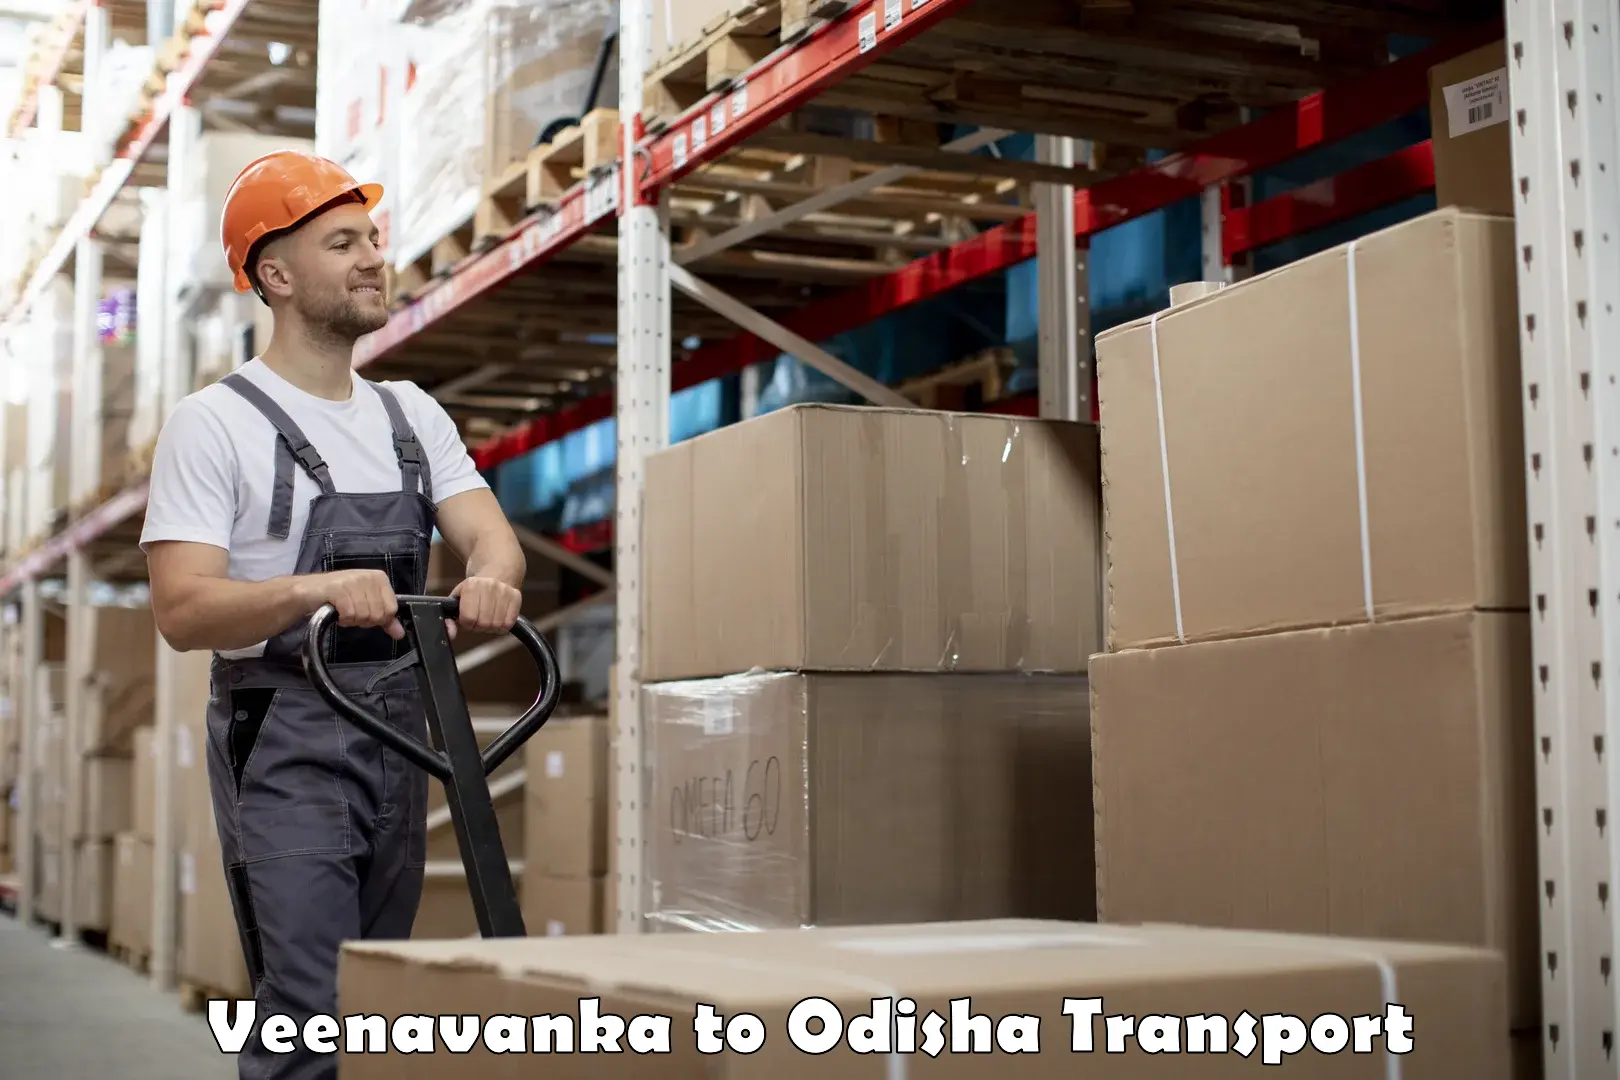 Truck transport companies in India Veenavanka to Aul